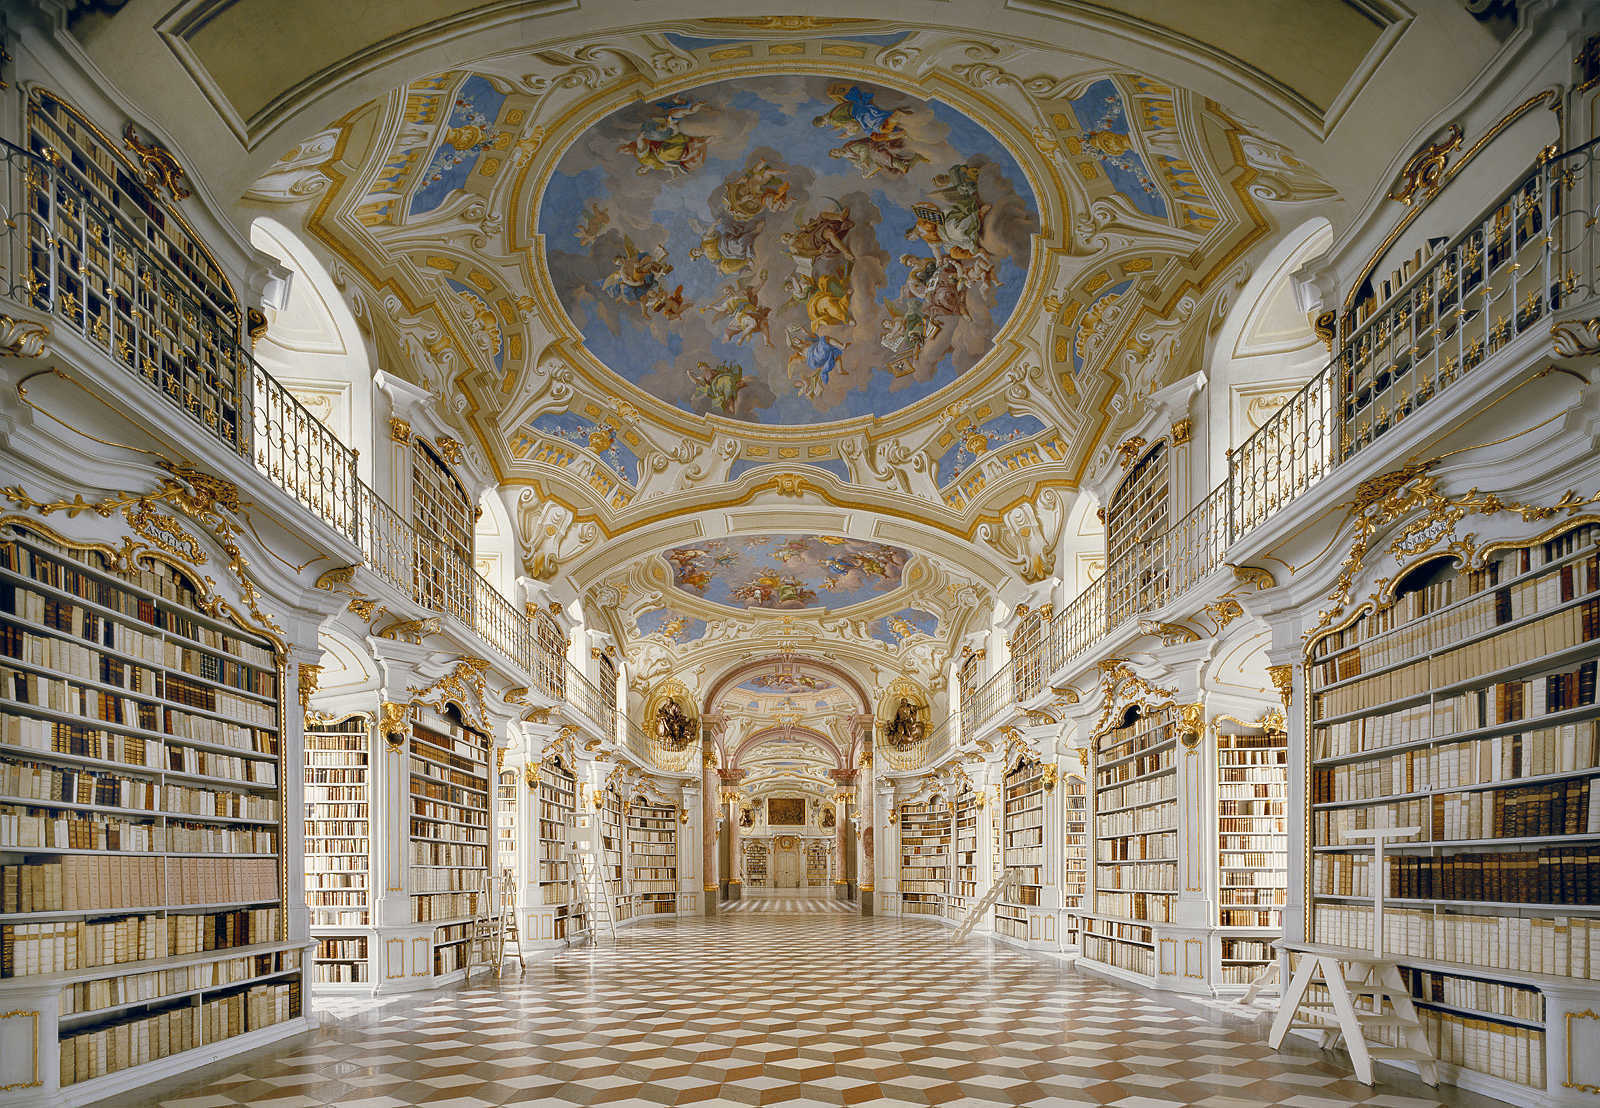 奥地利古老修道院图书馆 (Admont Abbey Library), 奥地利阿德蒙特 (Admont)